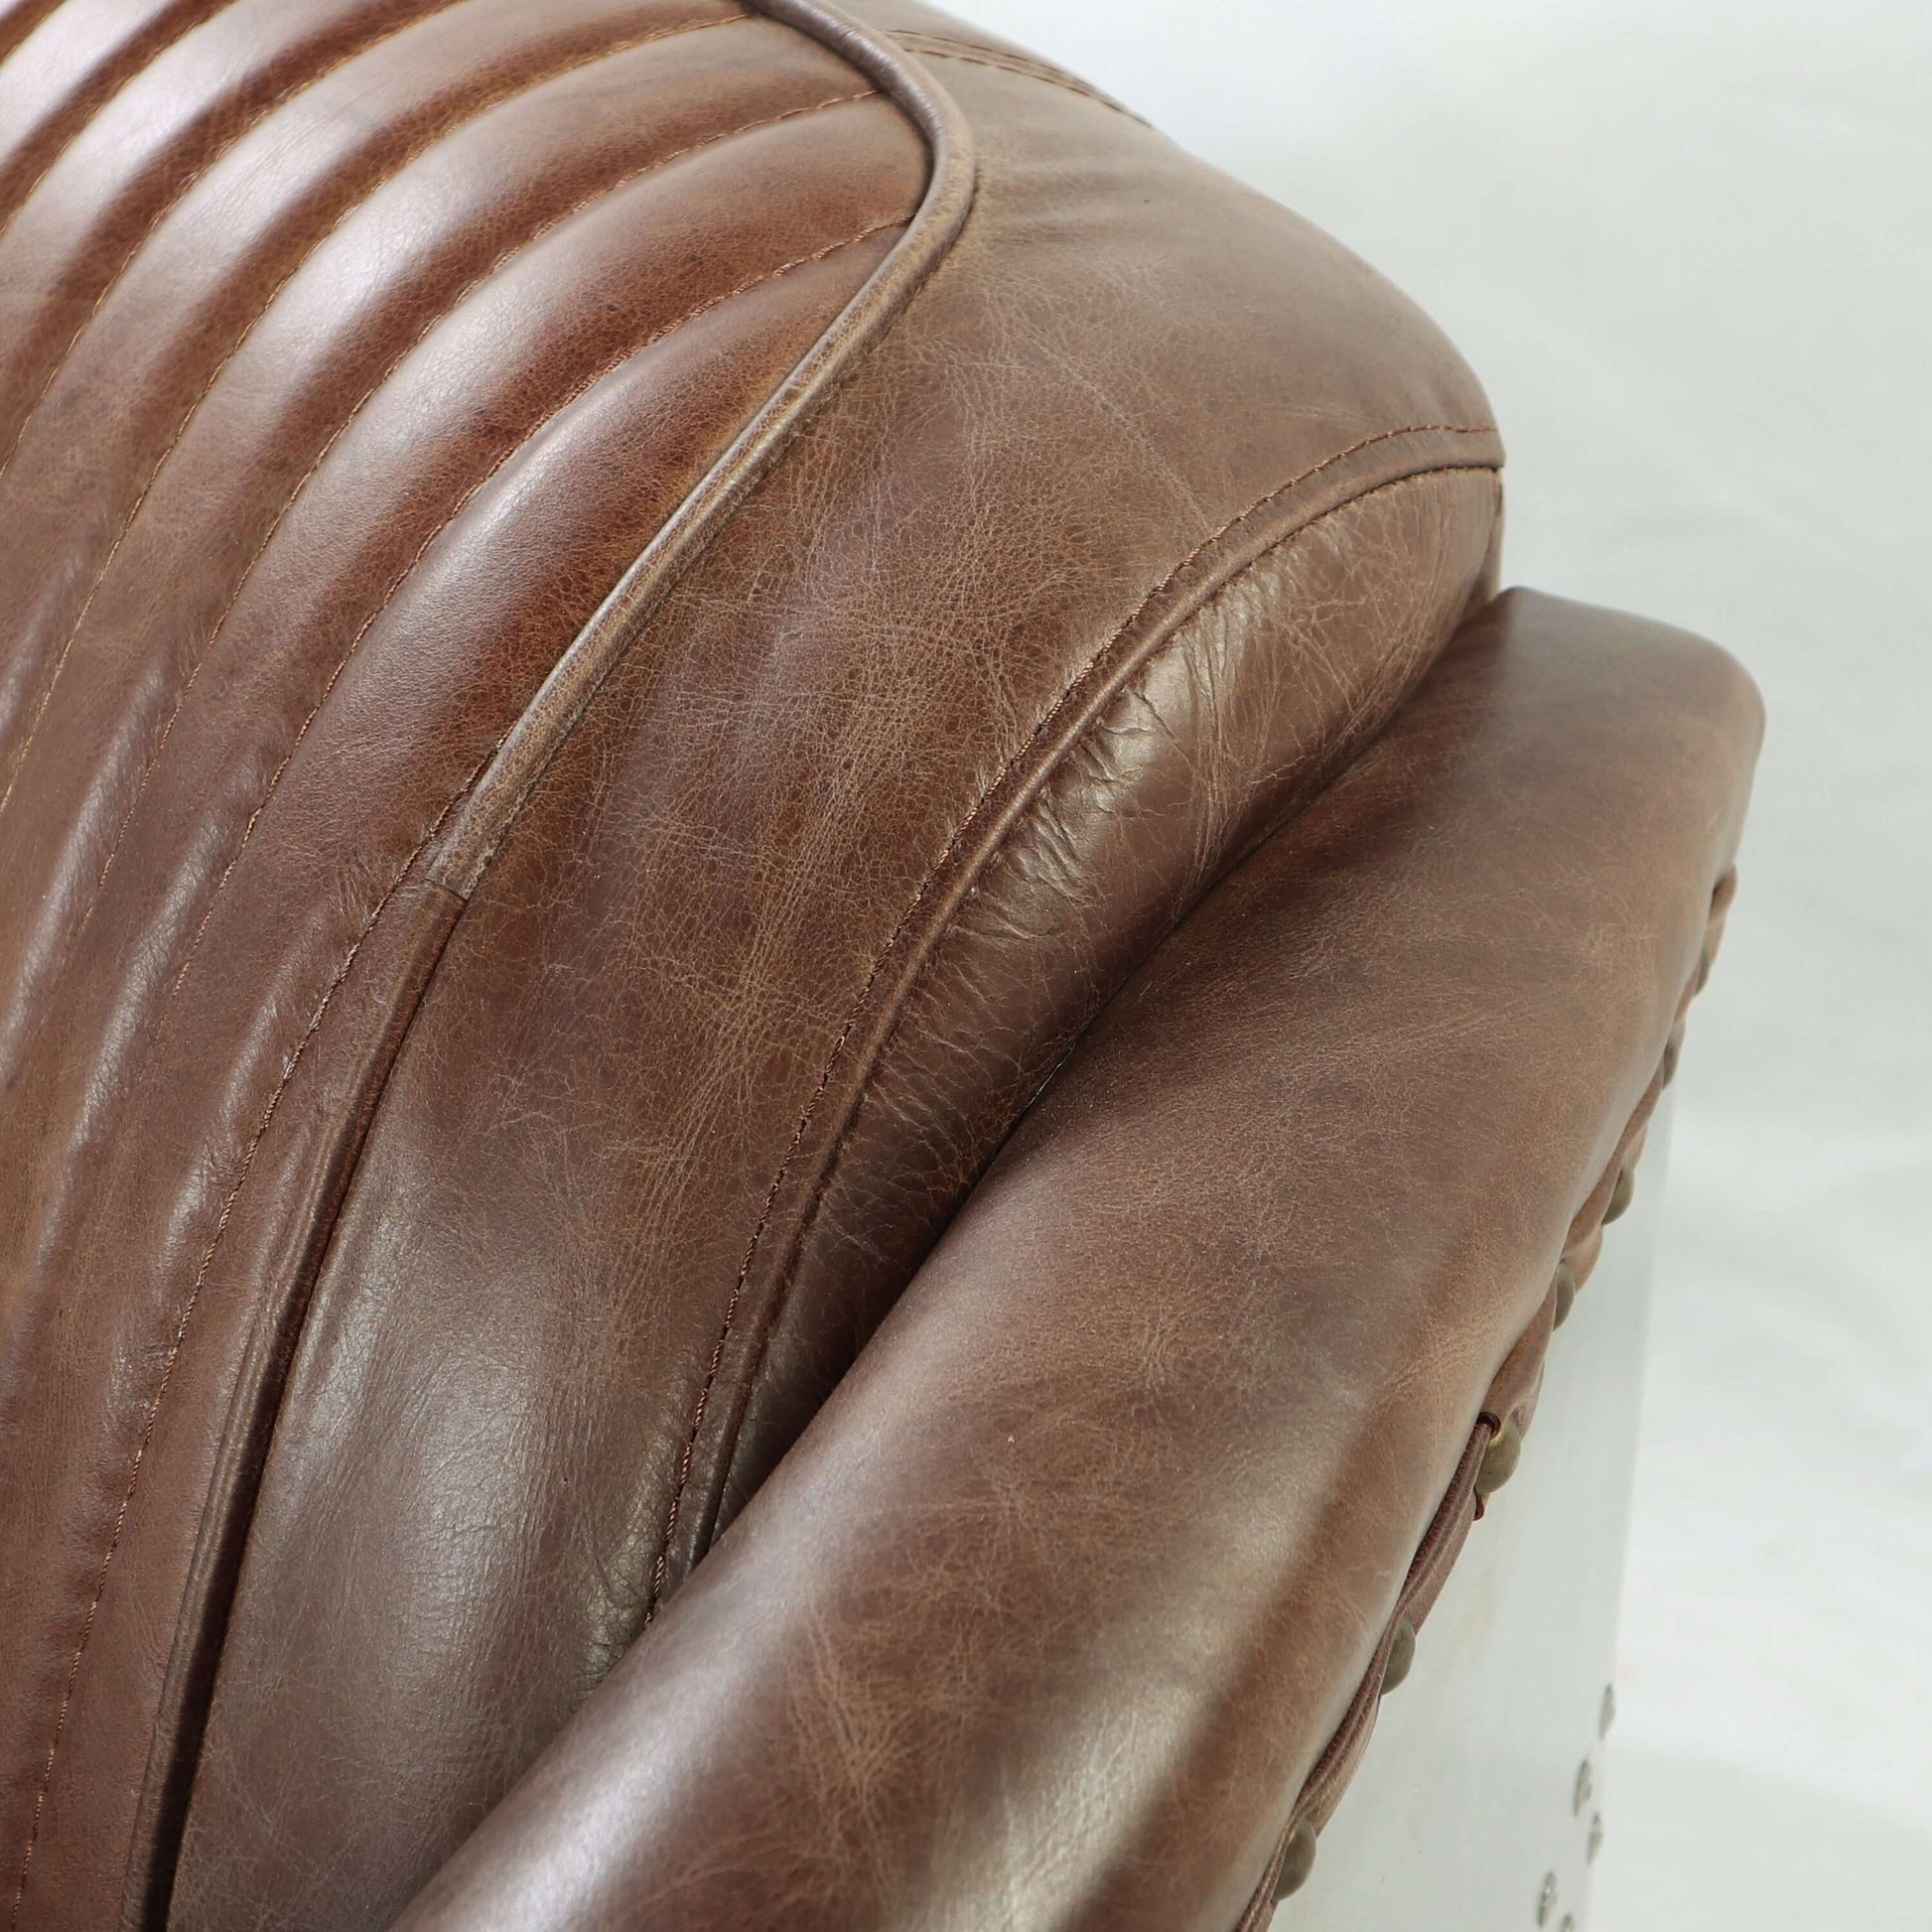 Brancaster Retro Loveseat Sofa in Top Grain Leather & Aluminum 50" - Revel Sofa 